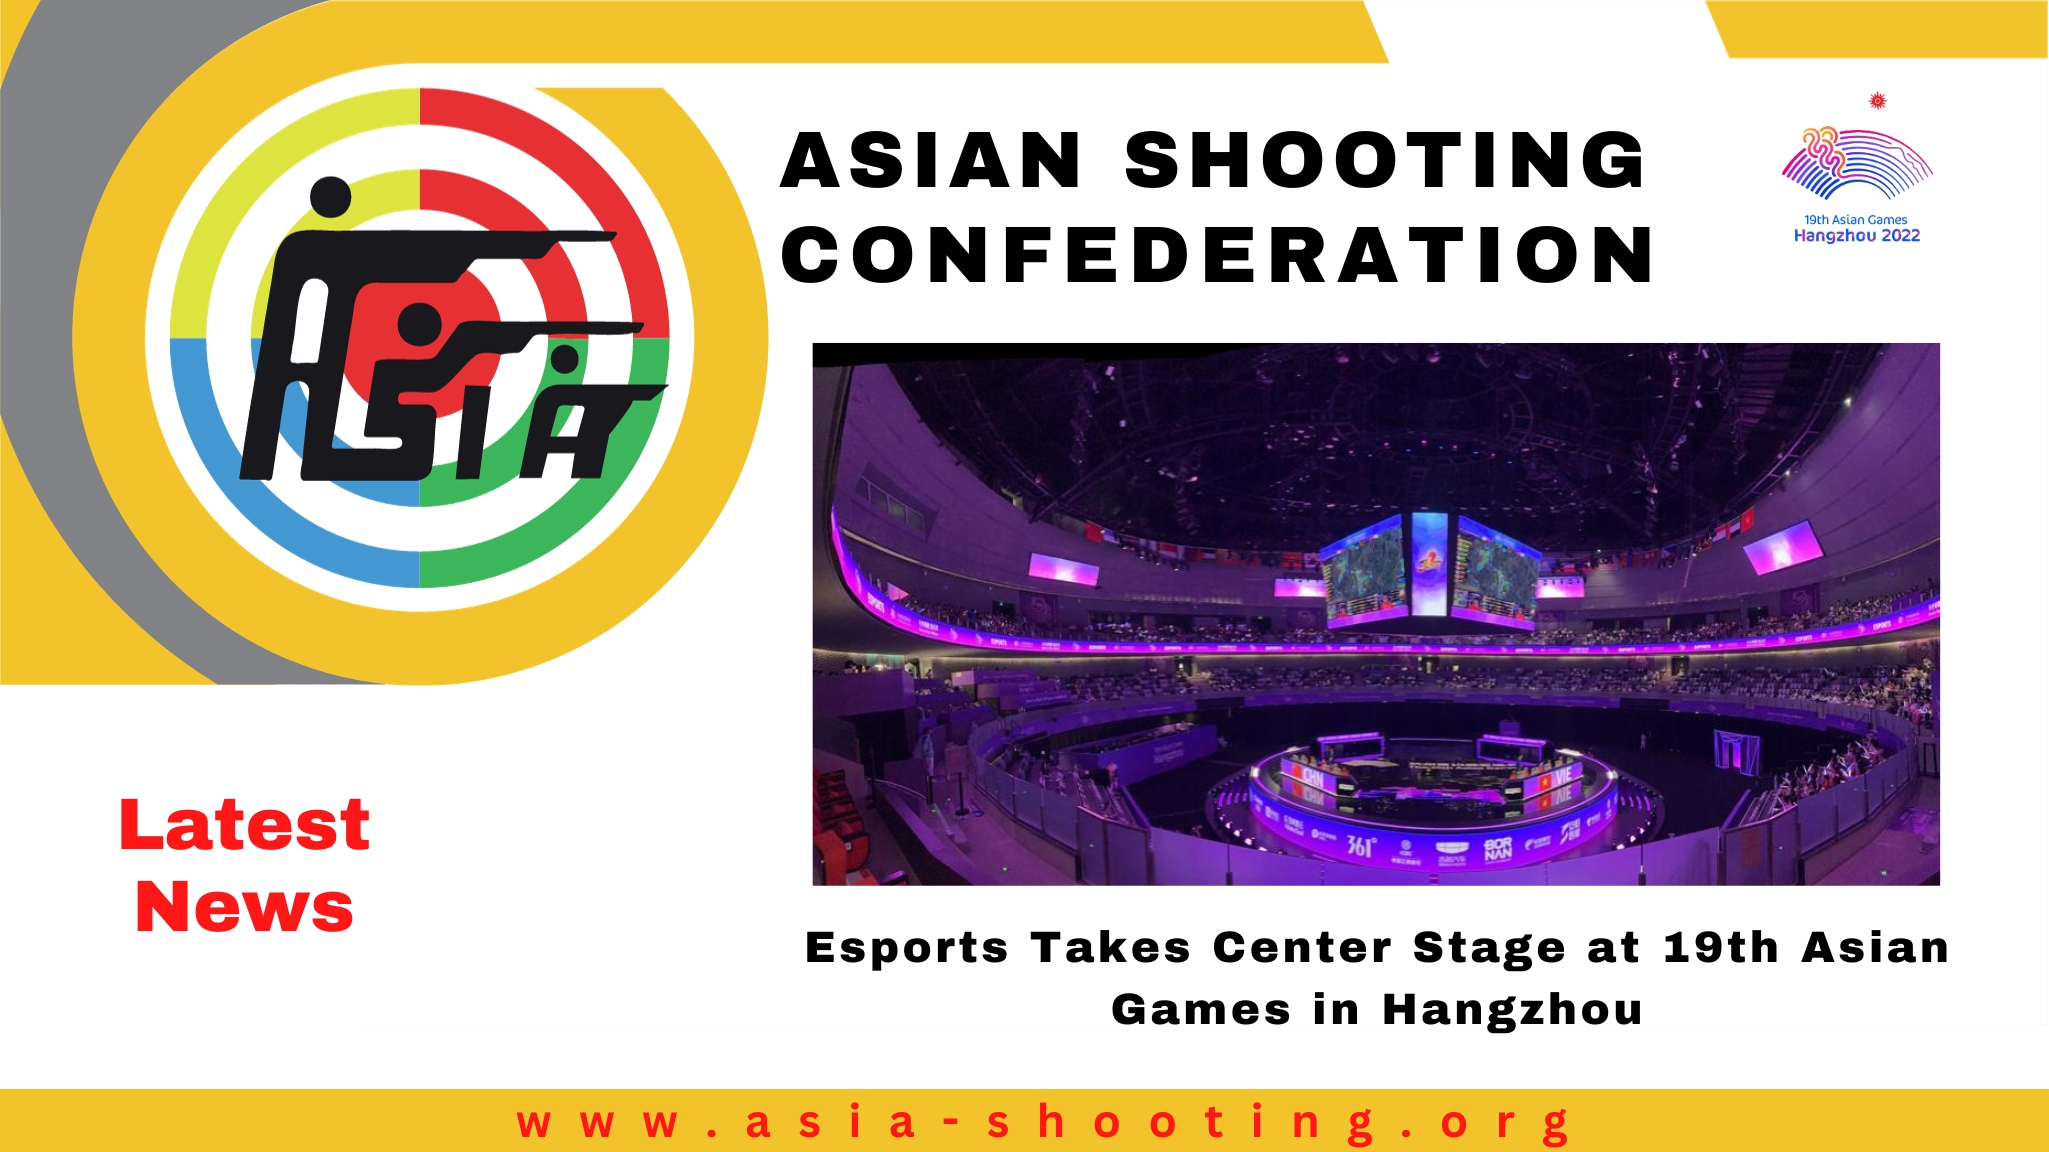 Esports estreia nos Jogos Asiáticos em Hangzhou, ingressos em alta demanda